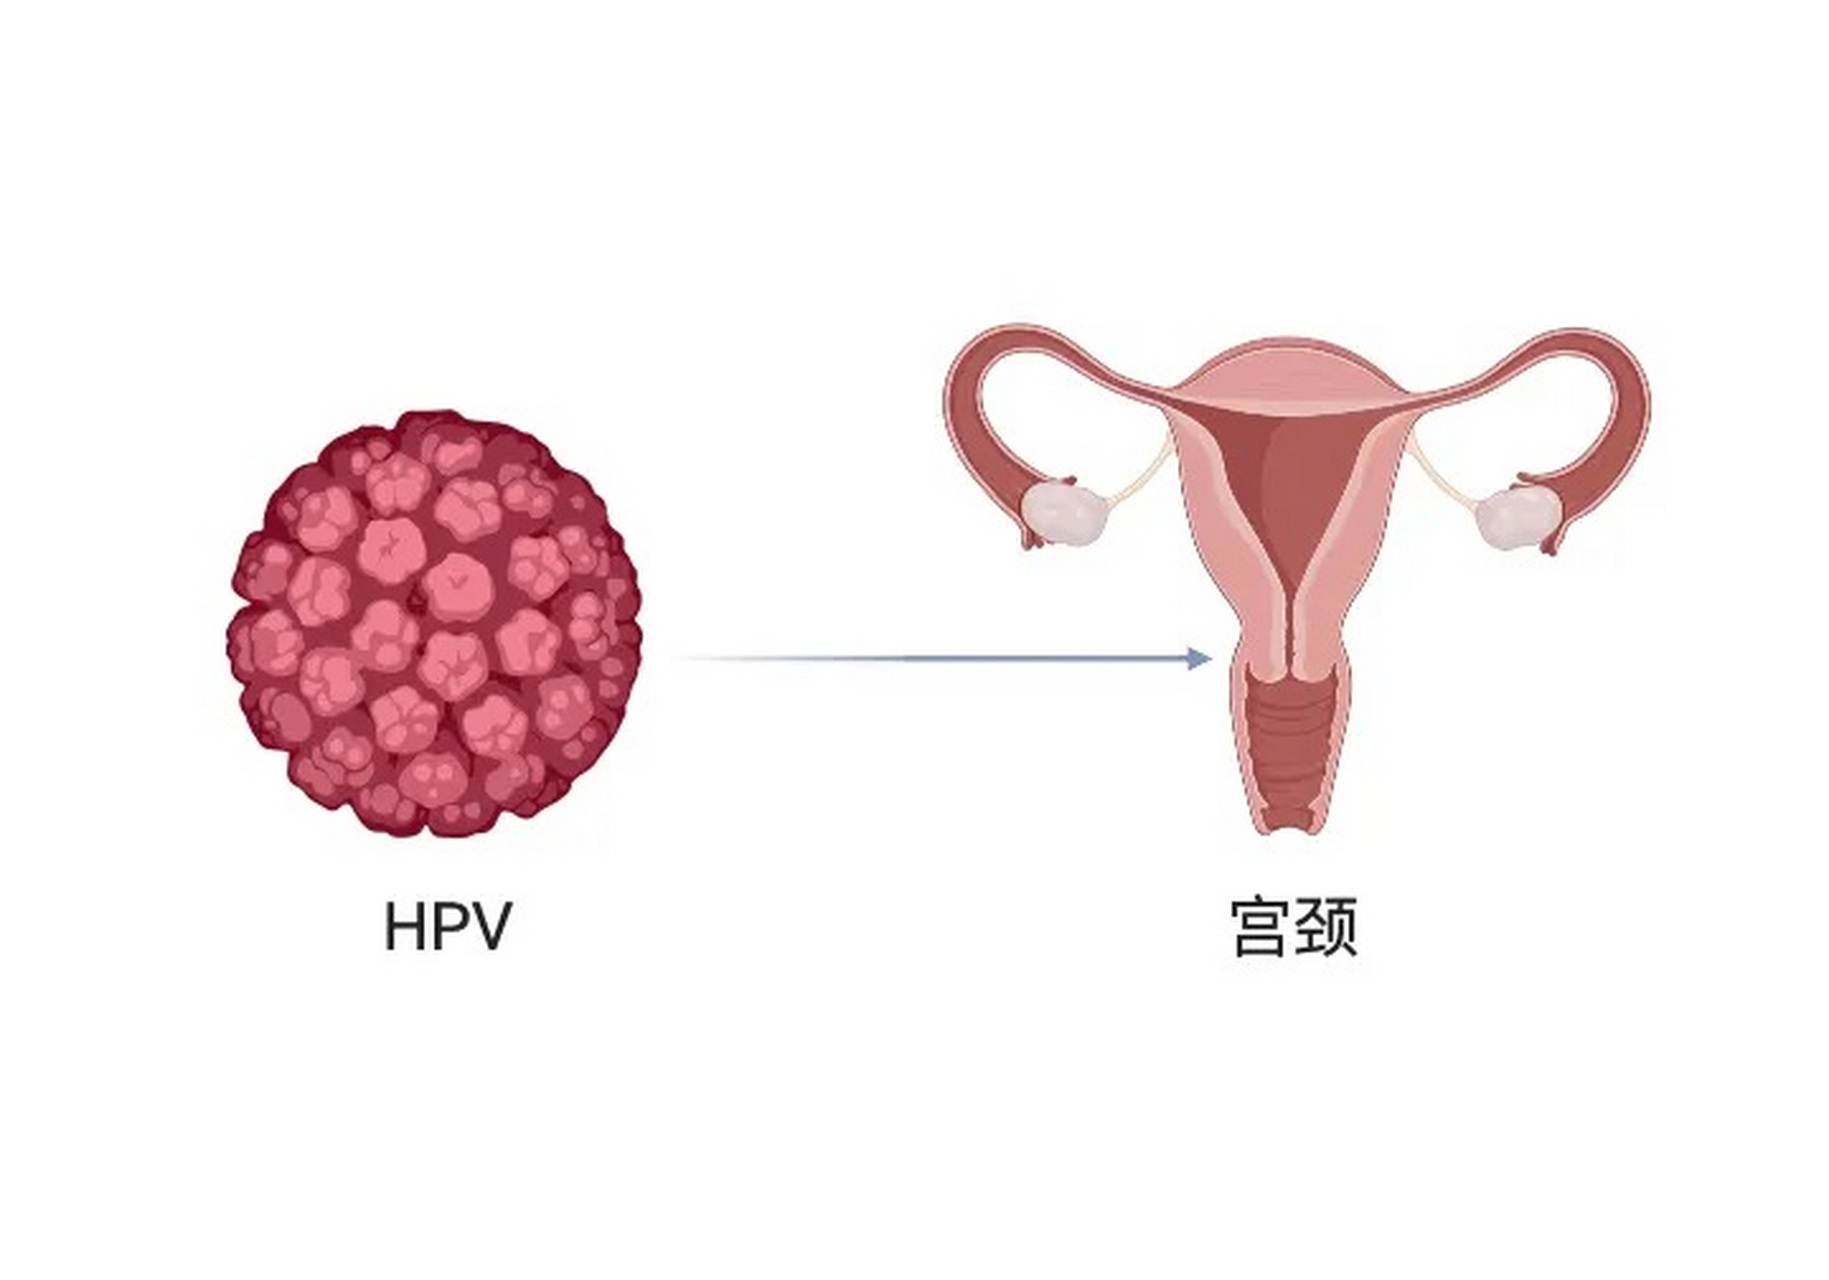 女性宫颈感染hpv病毒有什么症状 女性宫颈感染hpv通常没有症状,具体